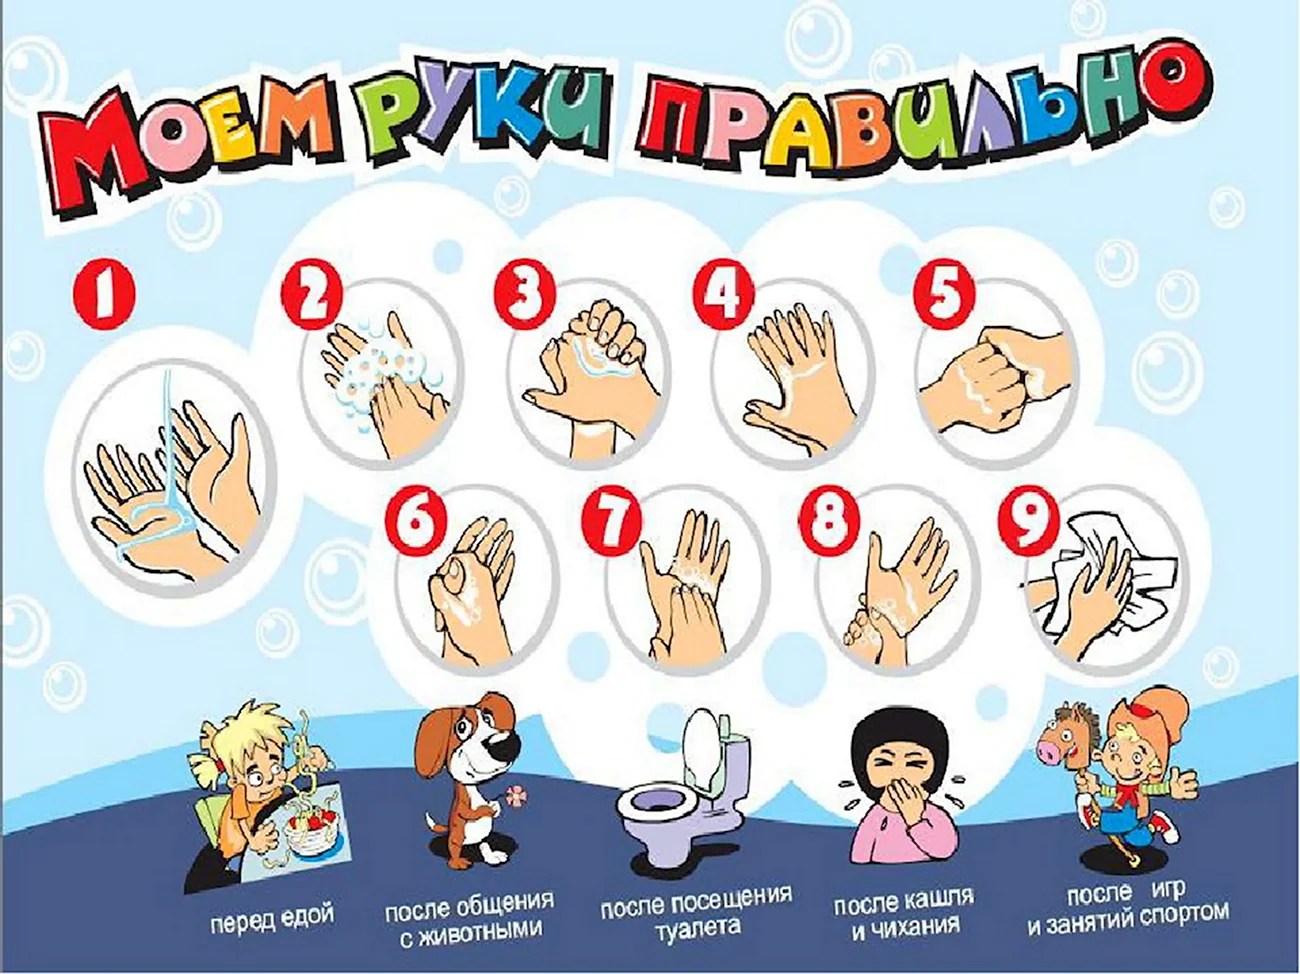 Правила мытья рук для детей. Картинка